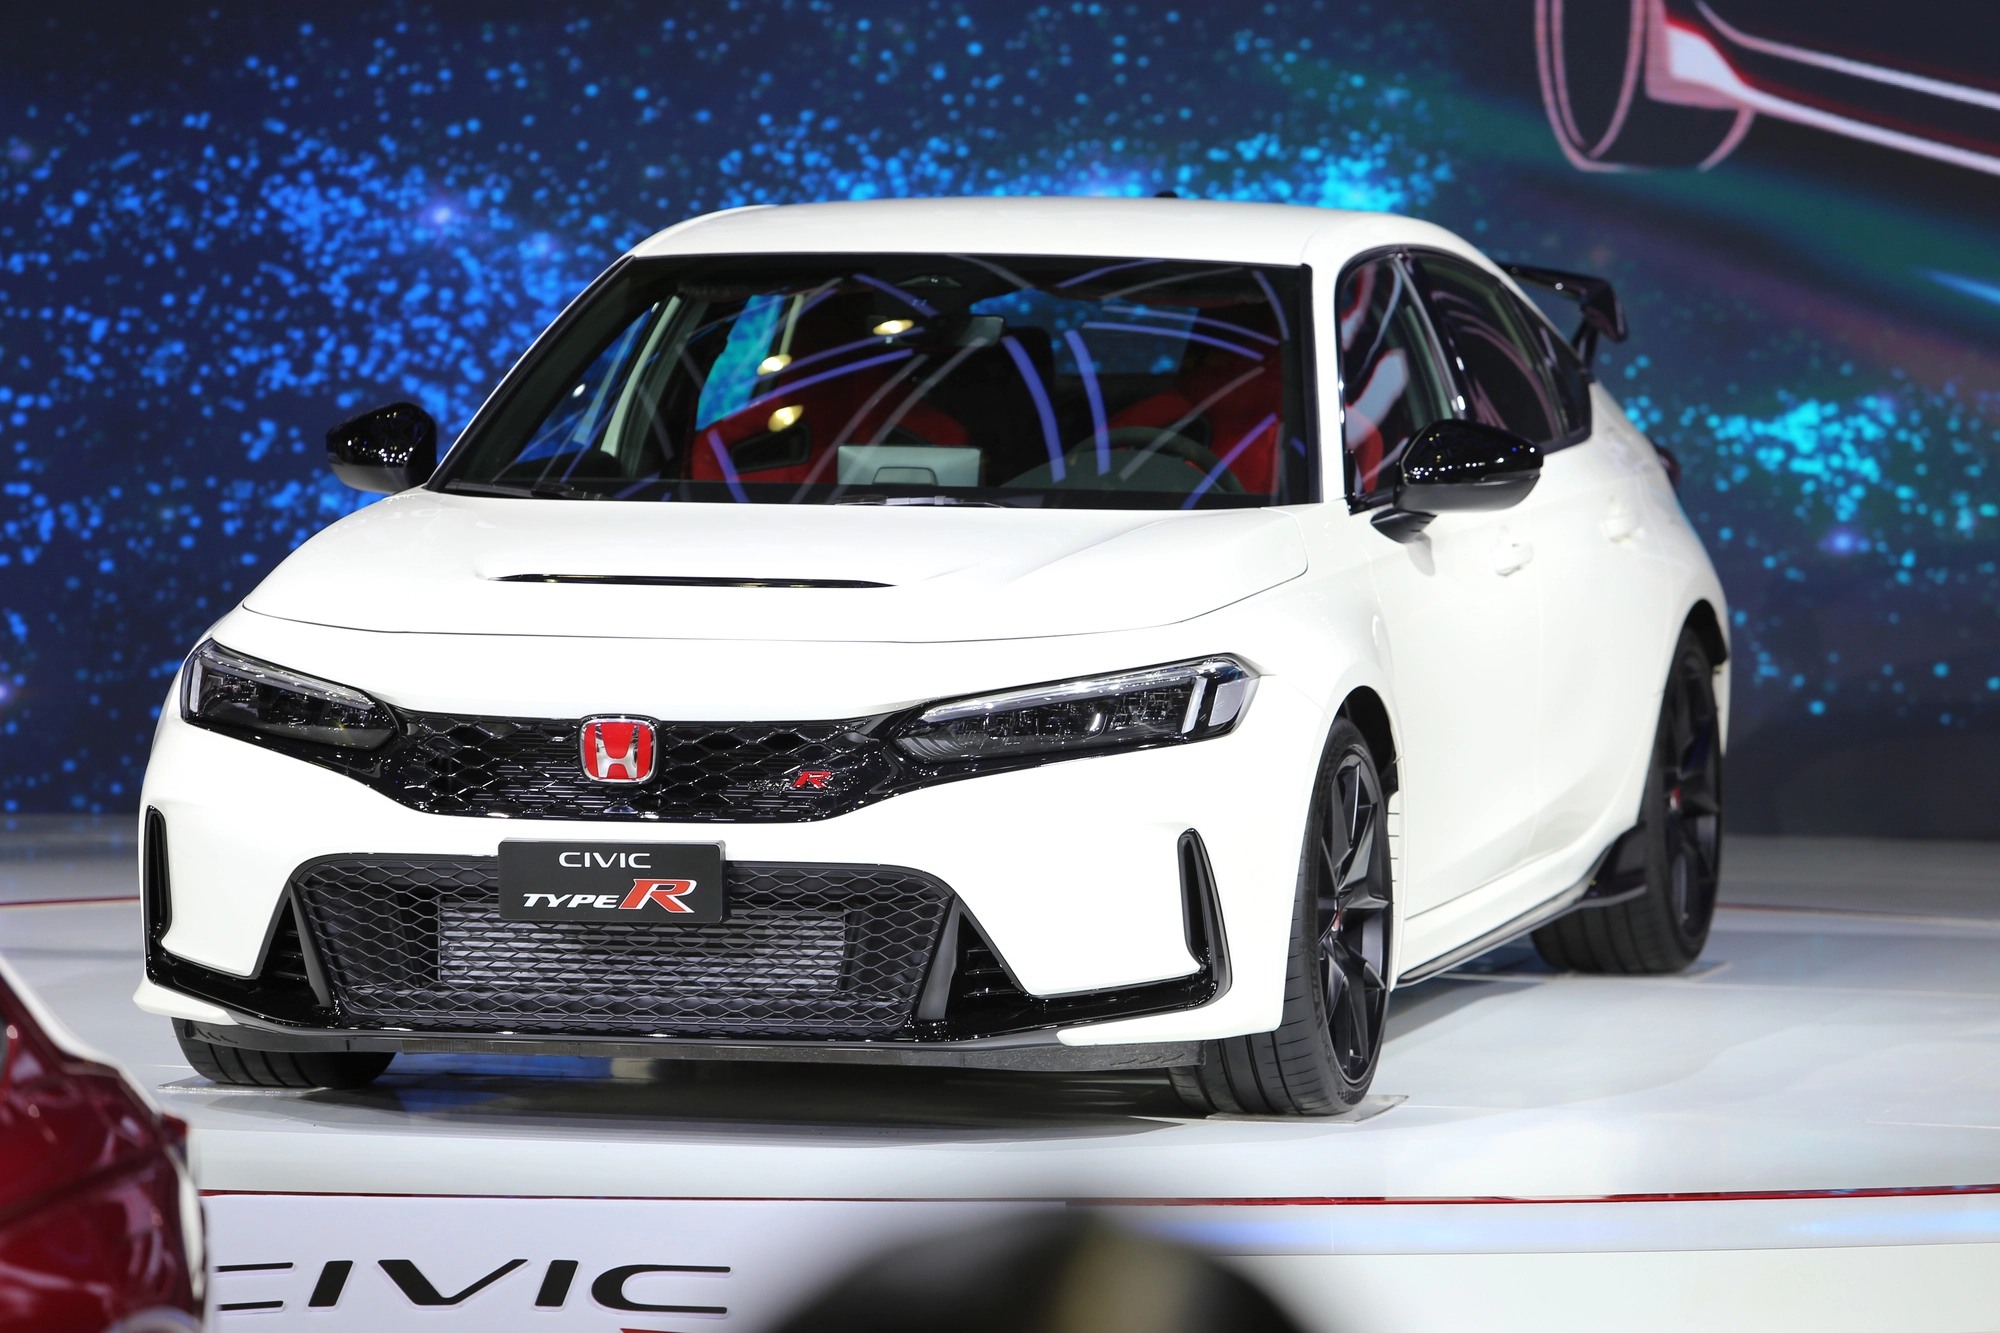 Honda Civic 2022 giá lăn bánh 62023 TSKT đánh giá chi tiết